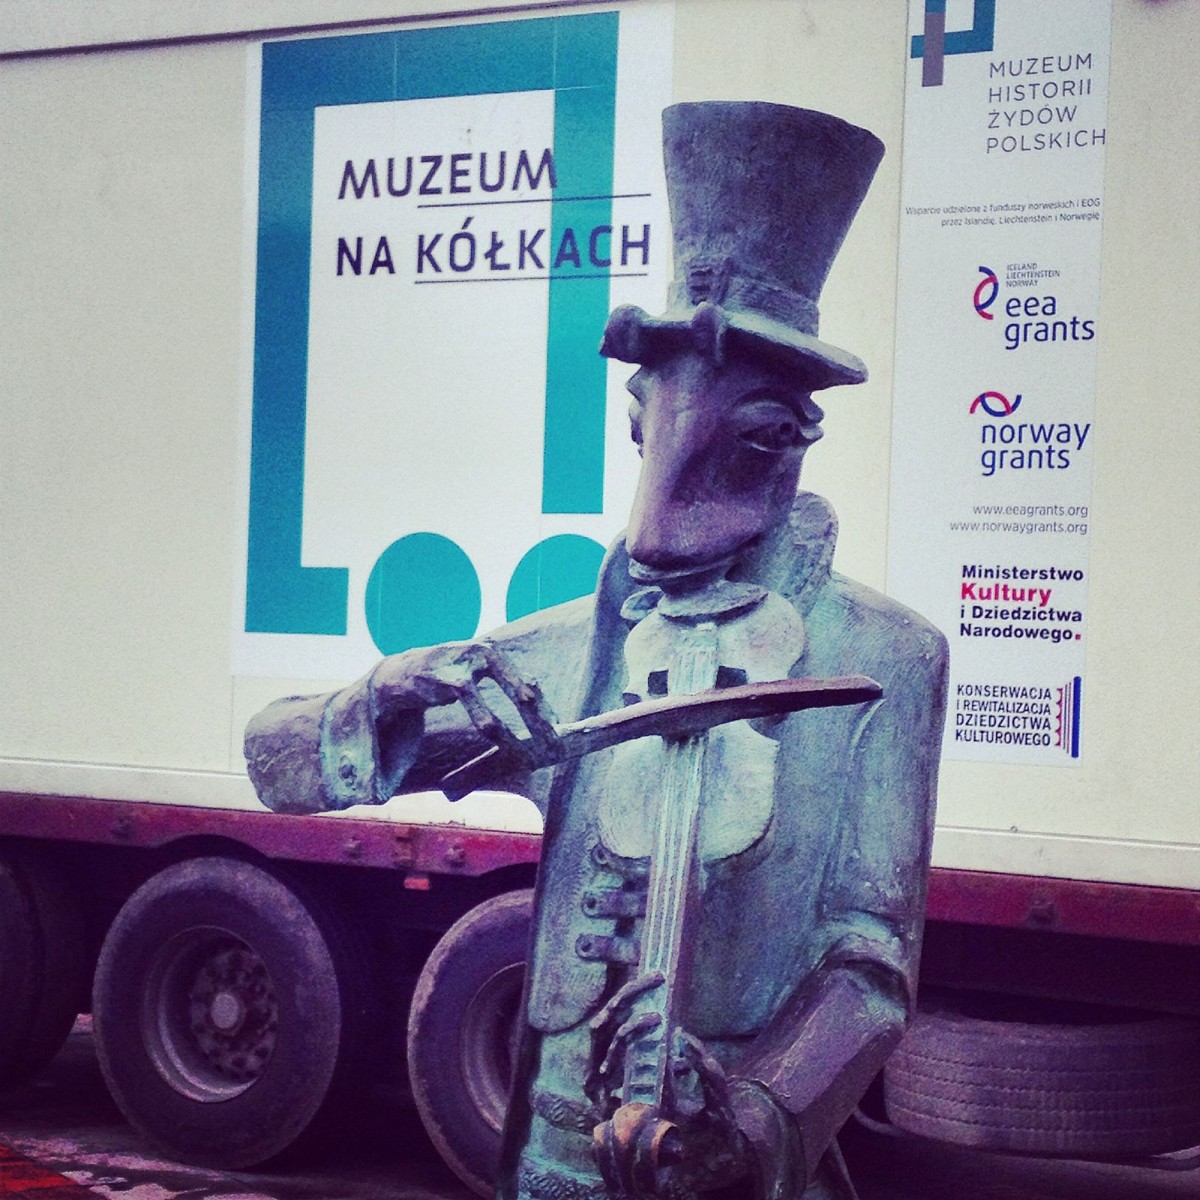 Chrząszcz ze Szczebrzeszyna (posąg) gra na skrzypcach przed wagonikiem z napisem Muzeum na kółkach.